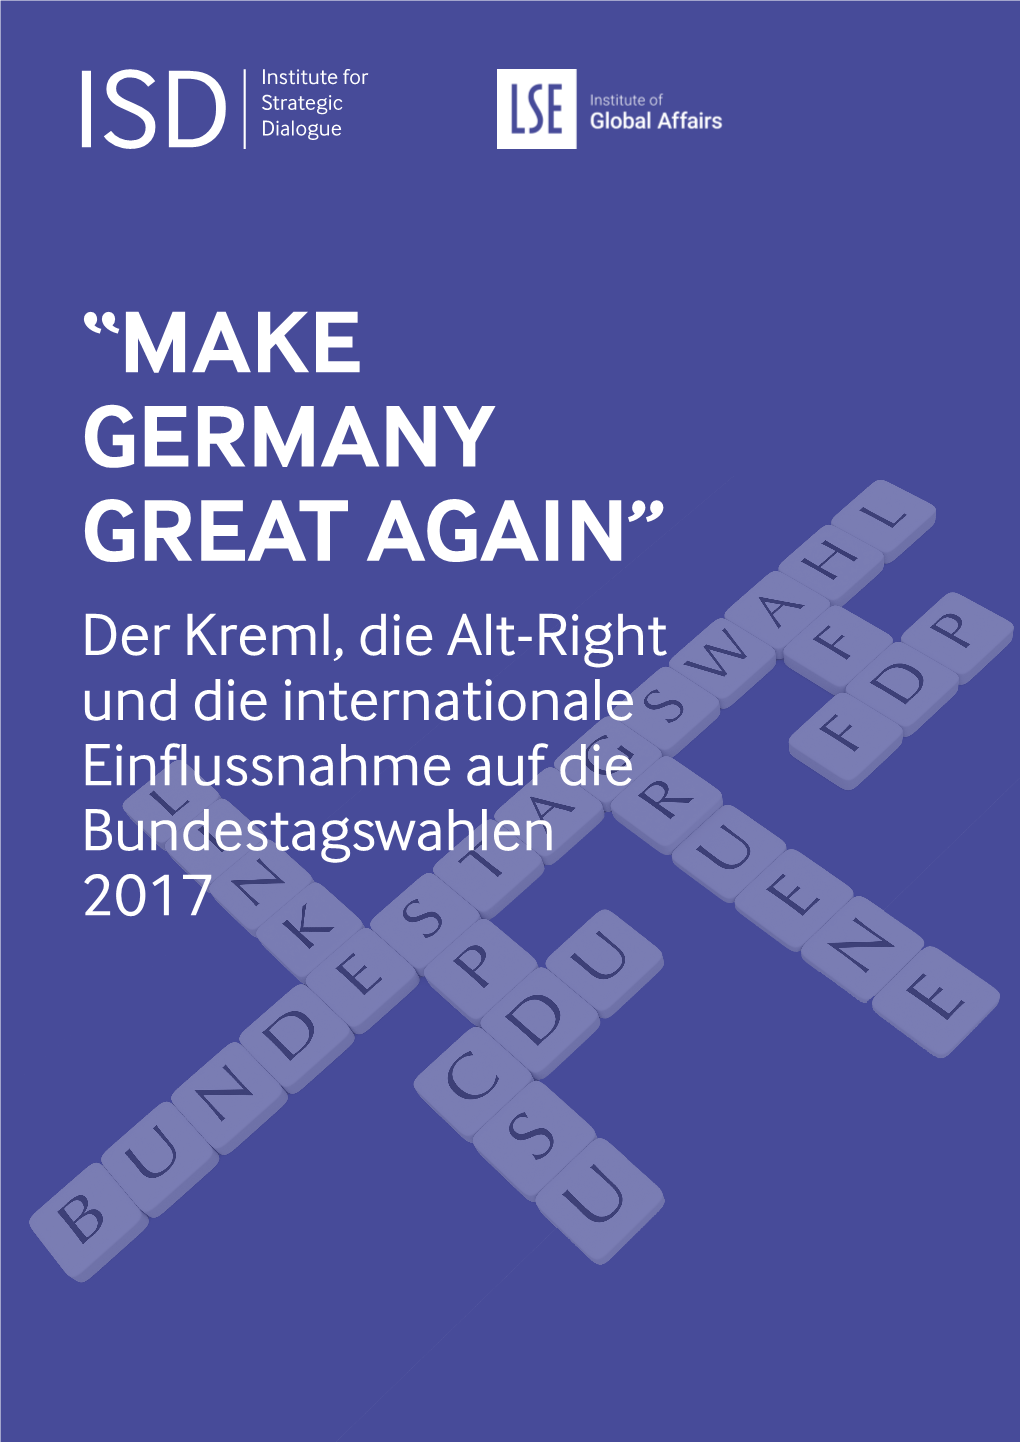 “Make Germany Great Again”